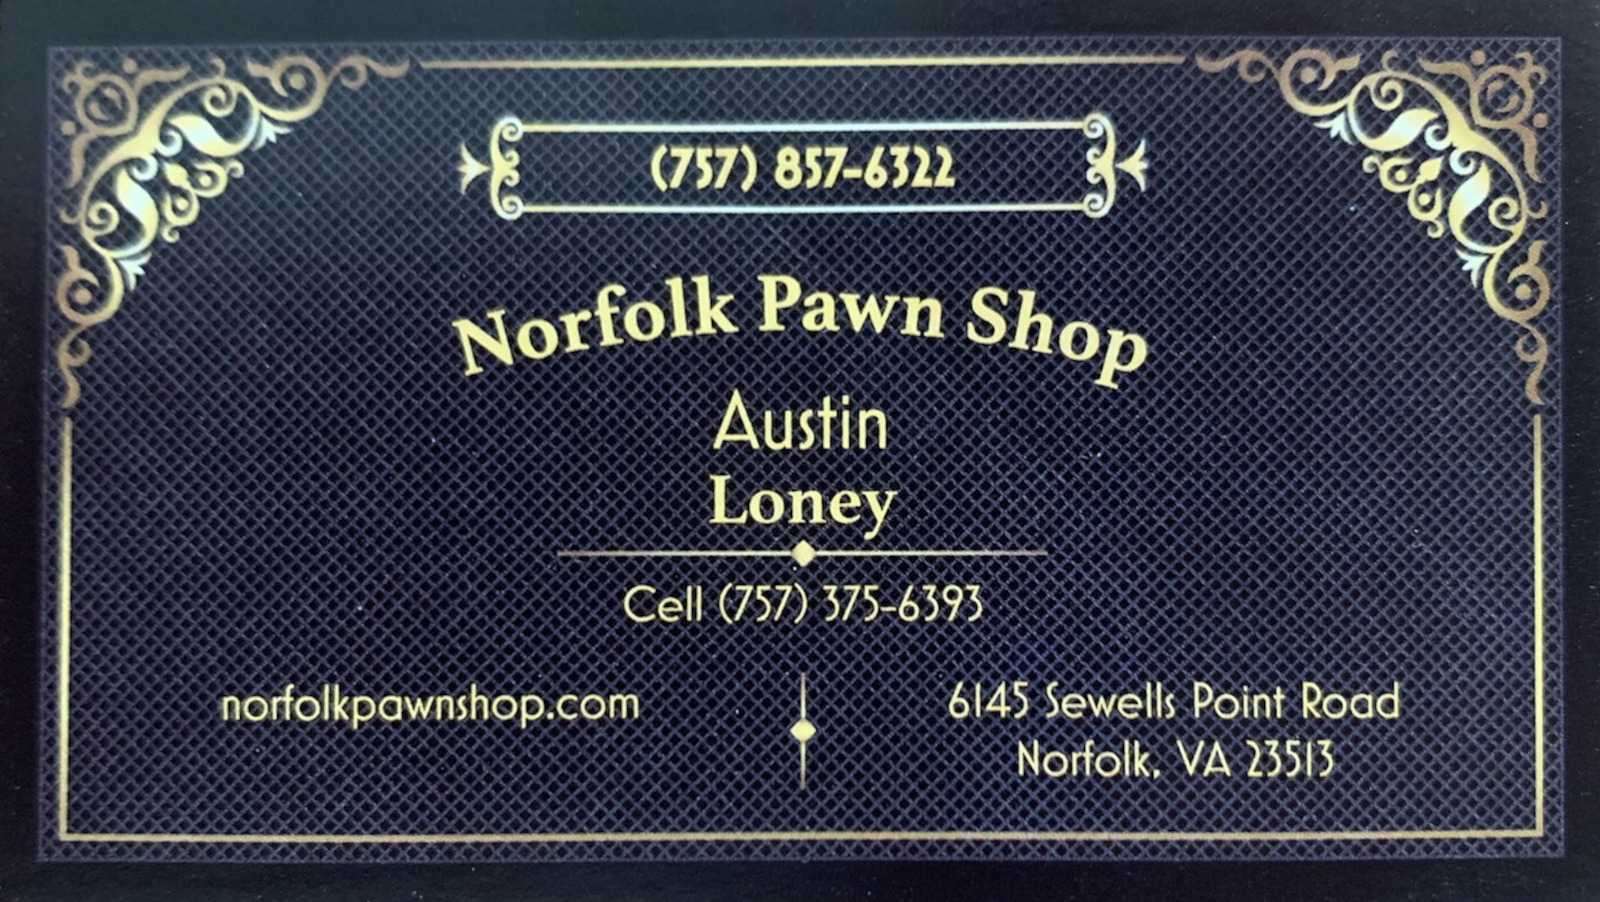 Norfolk Pawn